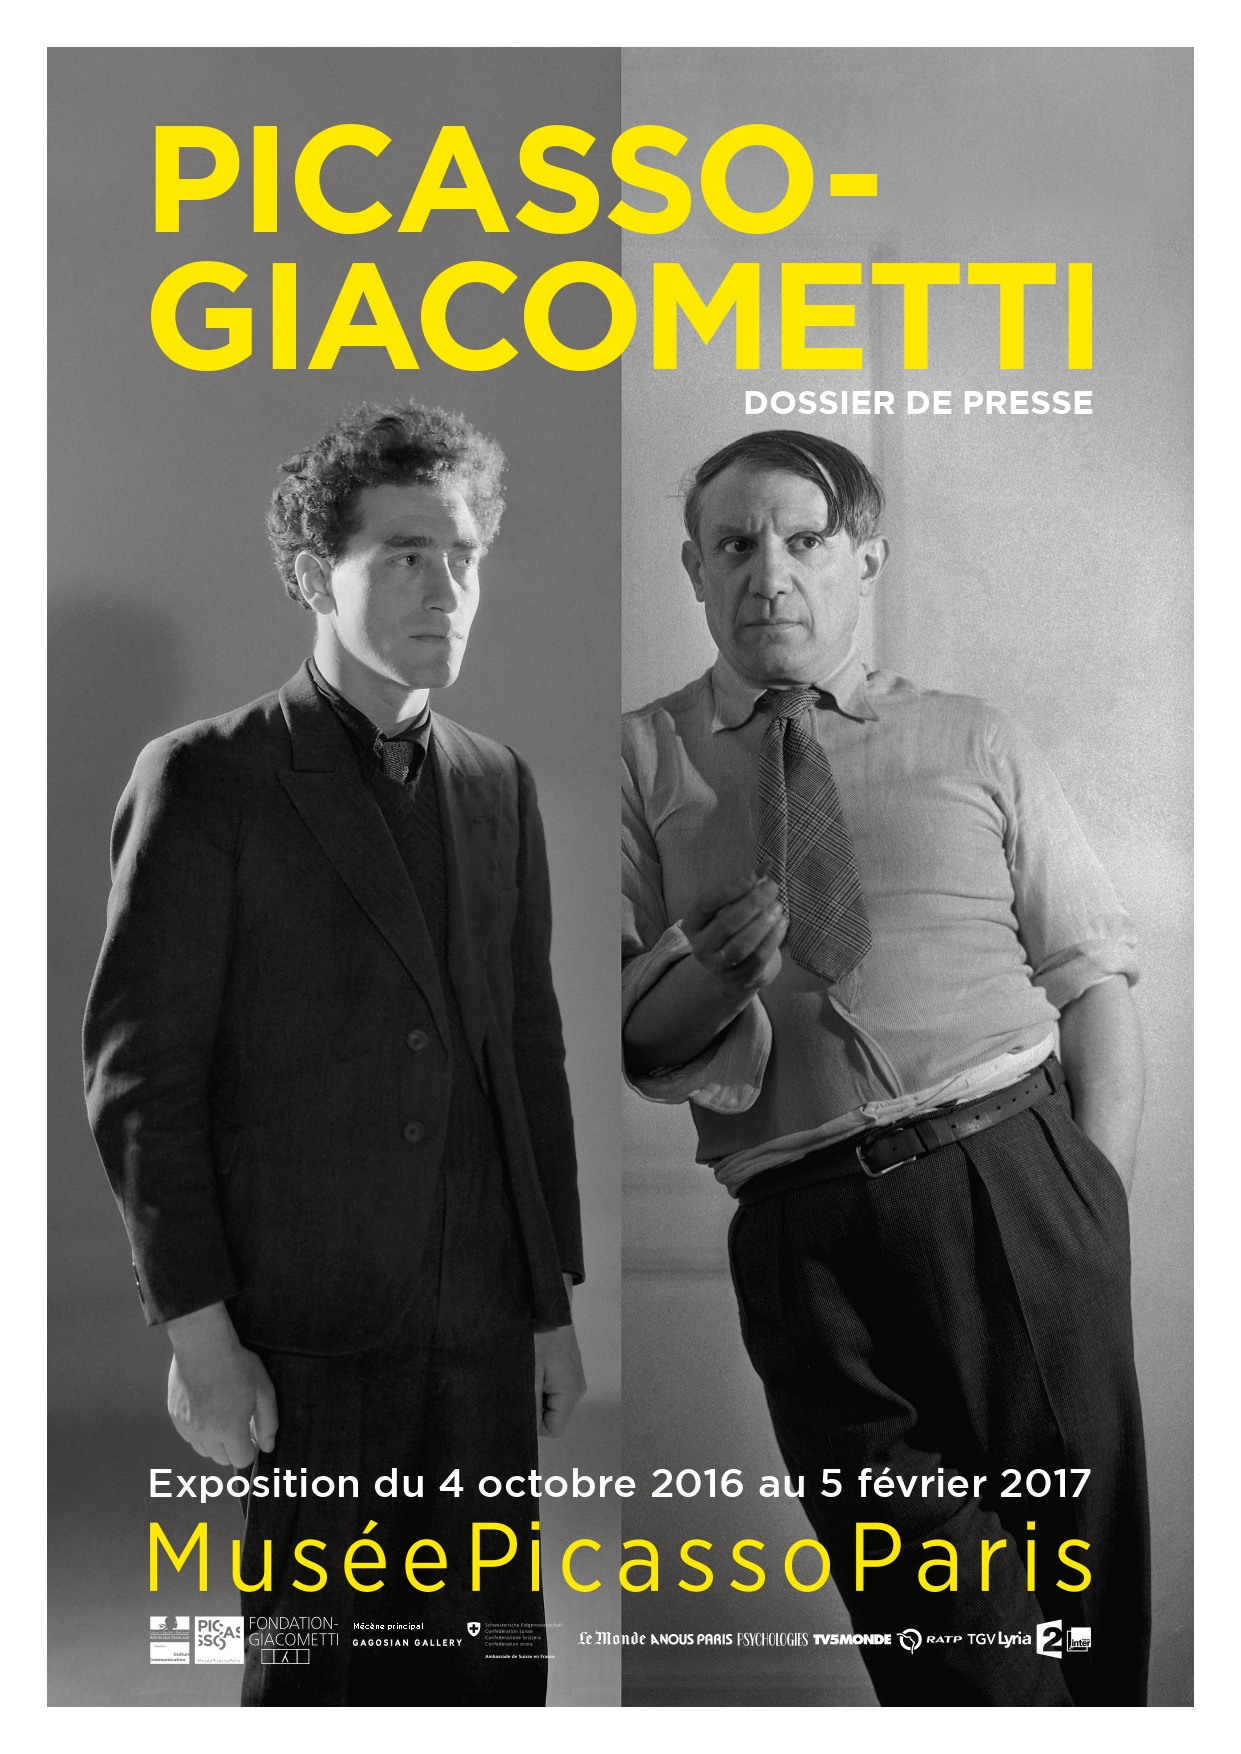 Dossier de presse "Picasso-Giacometti"